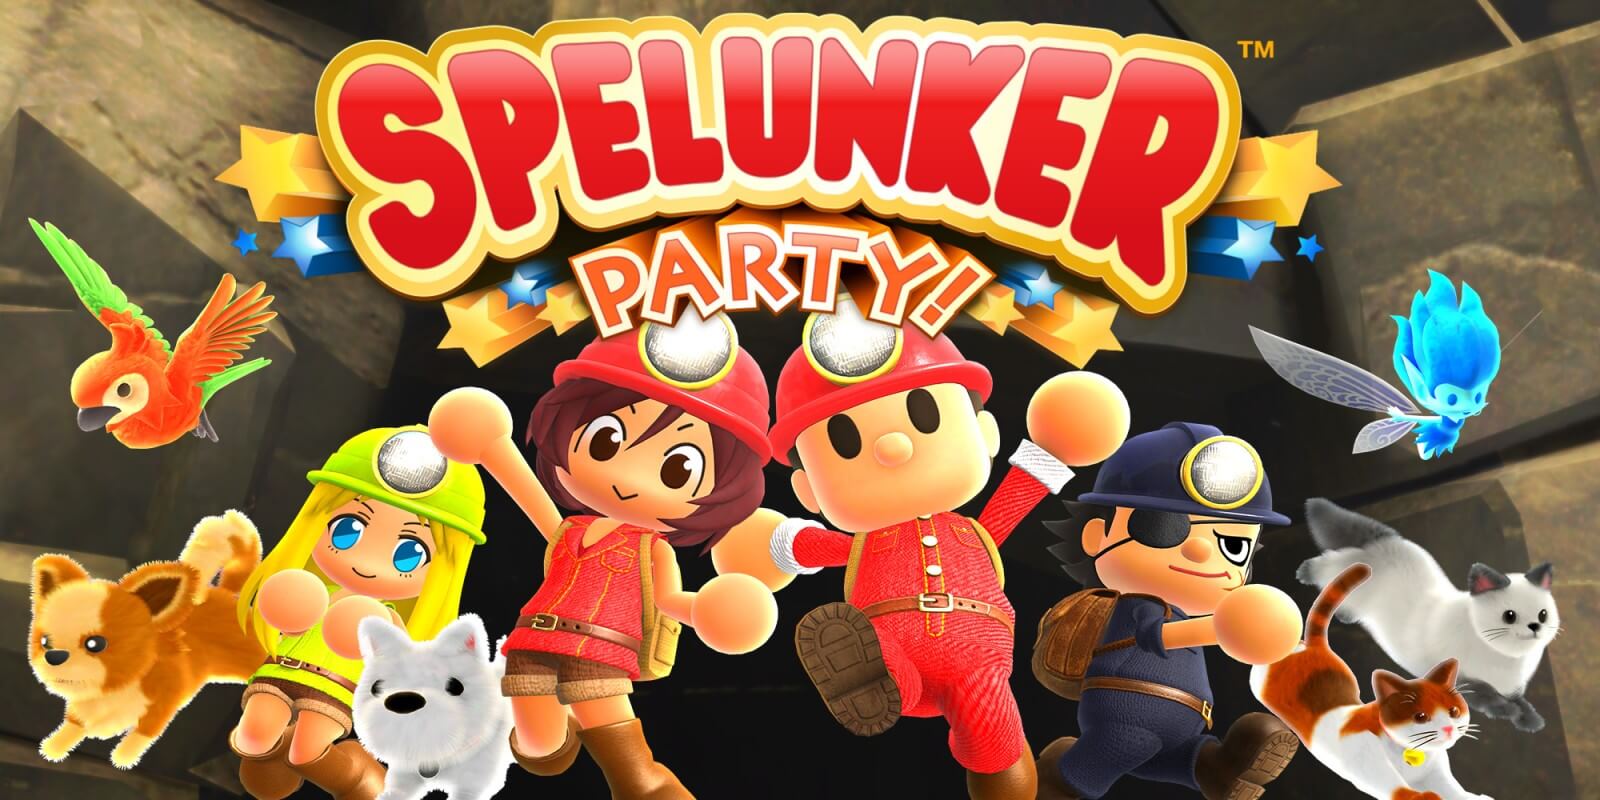 Spelunker Party! | Disponível para Nintendo Switch e Pc